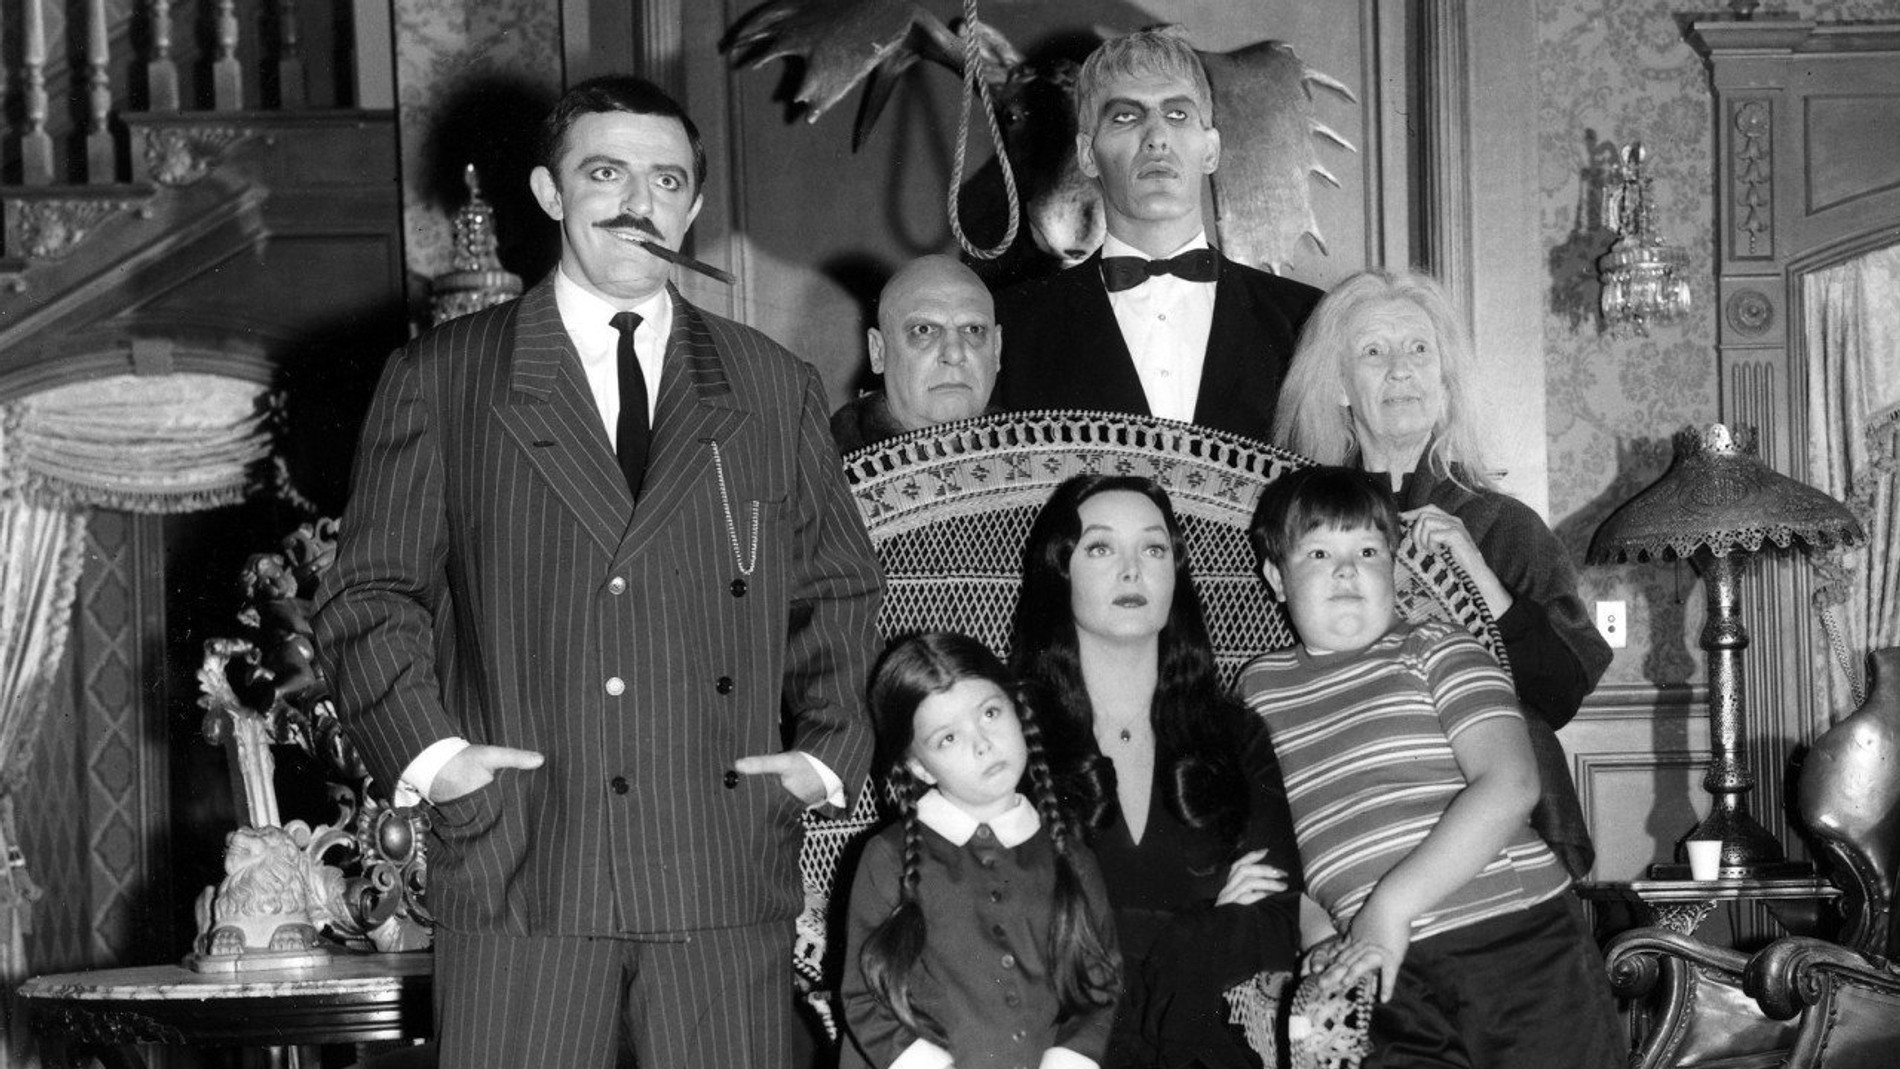 Групповое фото в костюмах семейки Аддамс. 
Источник: архив пресс-службы